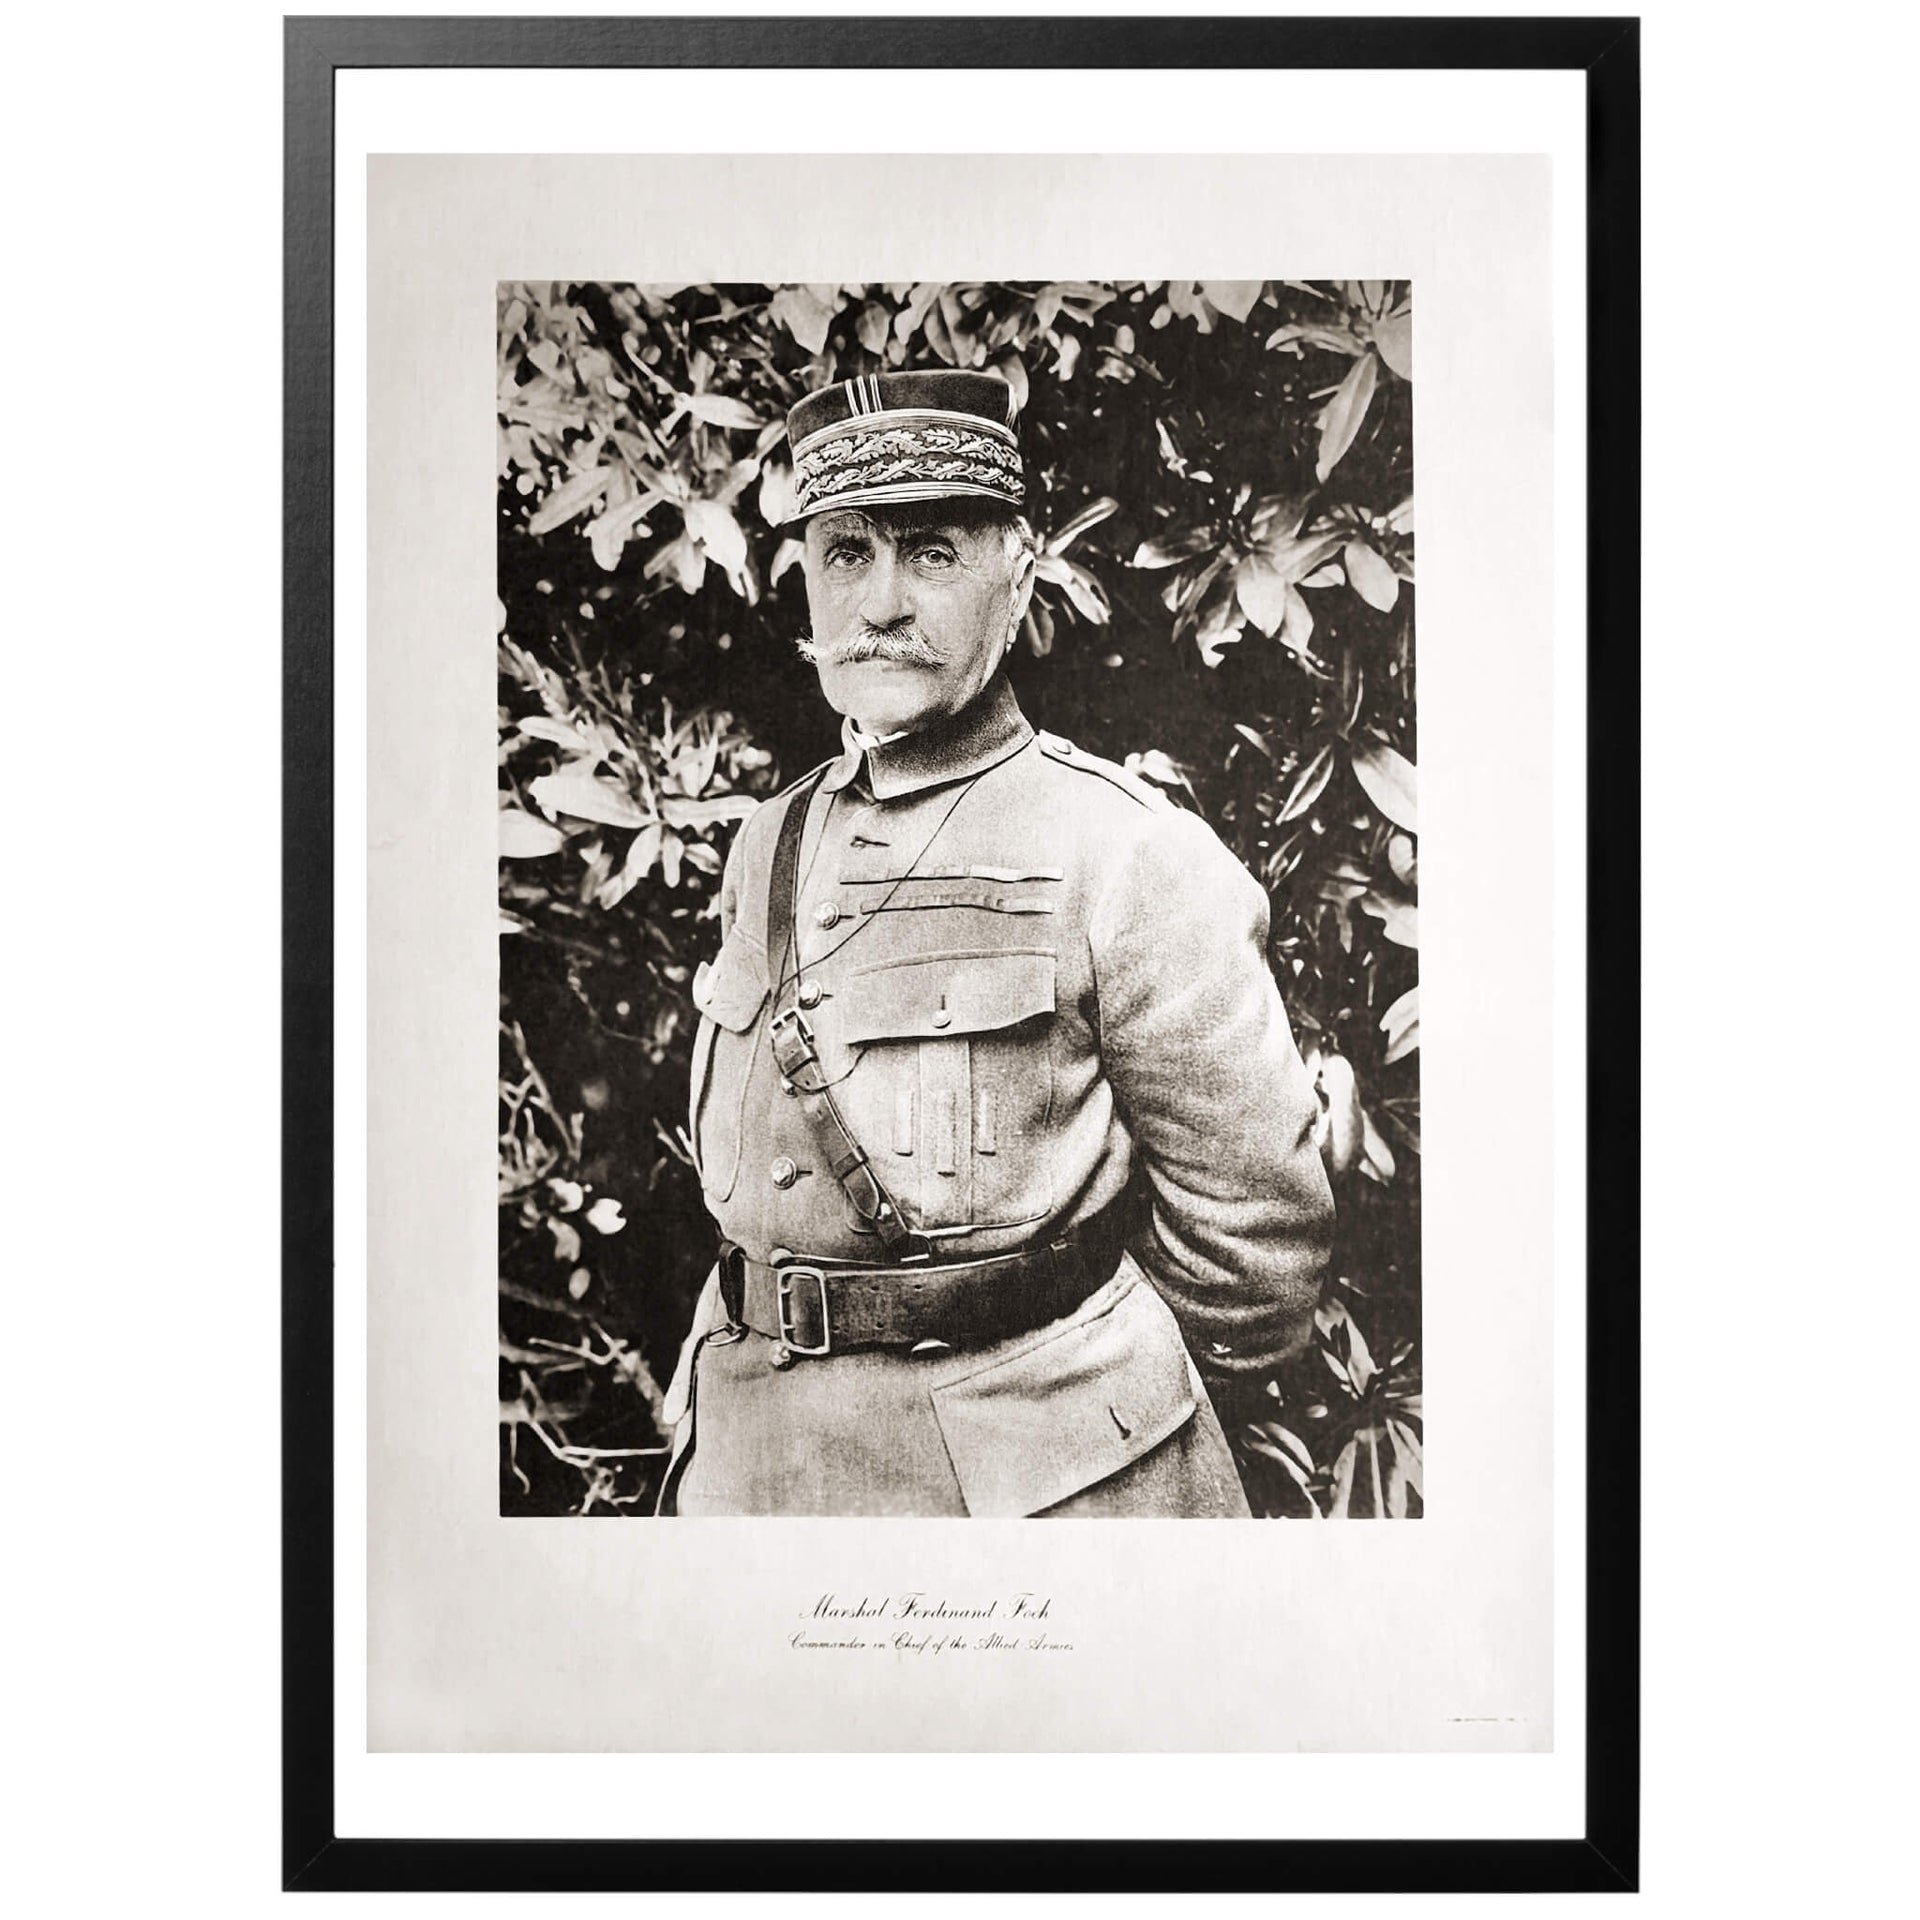 Marskalk Ferdinand Foch var den högsta allierade befälhavaren under första världskriget. Han kom i slutet av kriget att styra Frankrike, Polen och Storbritannien till seger, och var den som tog emot den tyska kapitulationen i Compigène 1918.  Efter kriget kom Foch att ses som Frankrikes största hjälte och höll en hård linje mot Tyskland.  Marskalken kom att avlida 1929, 77 år gammal. 